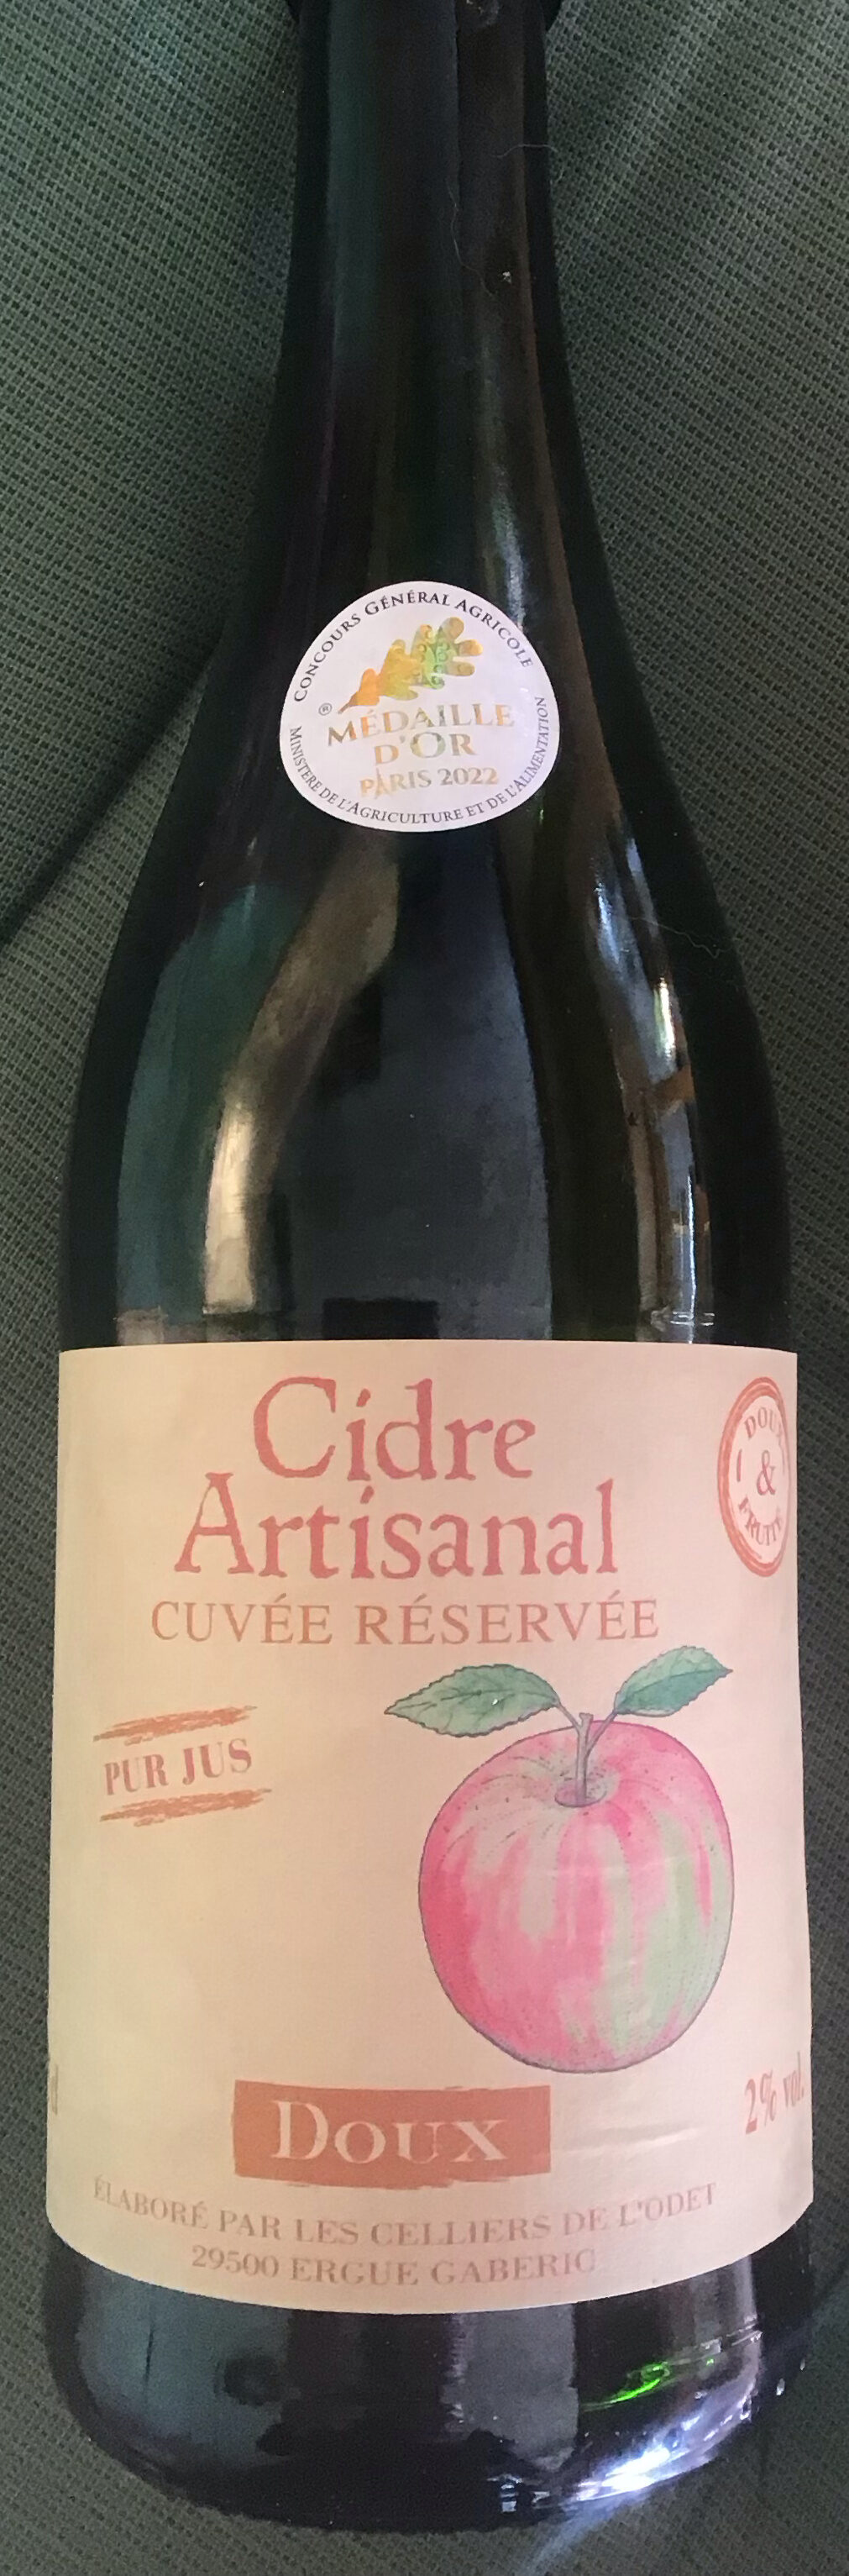 Cidre artisanal - Cuvée réservée - Product - fr